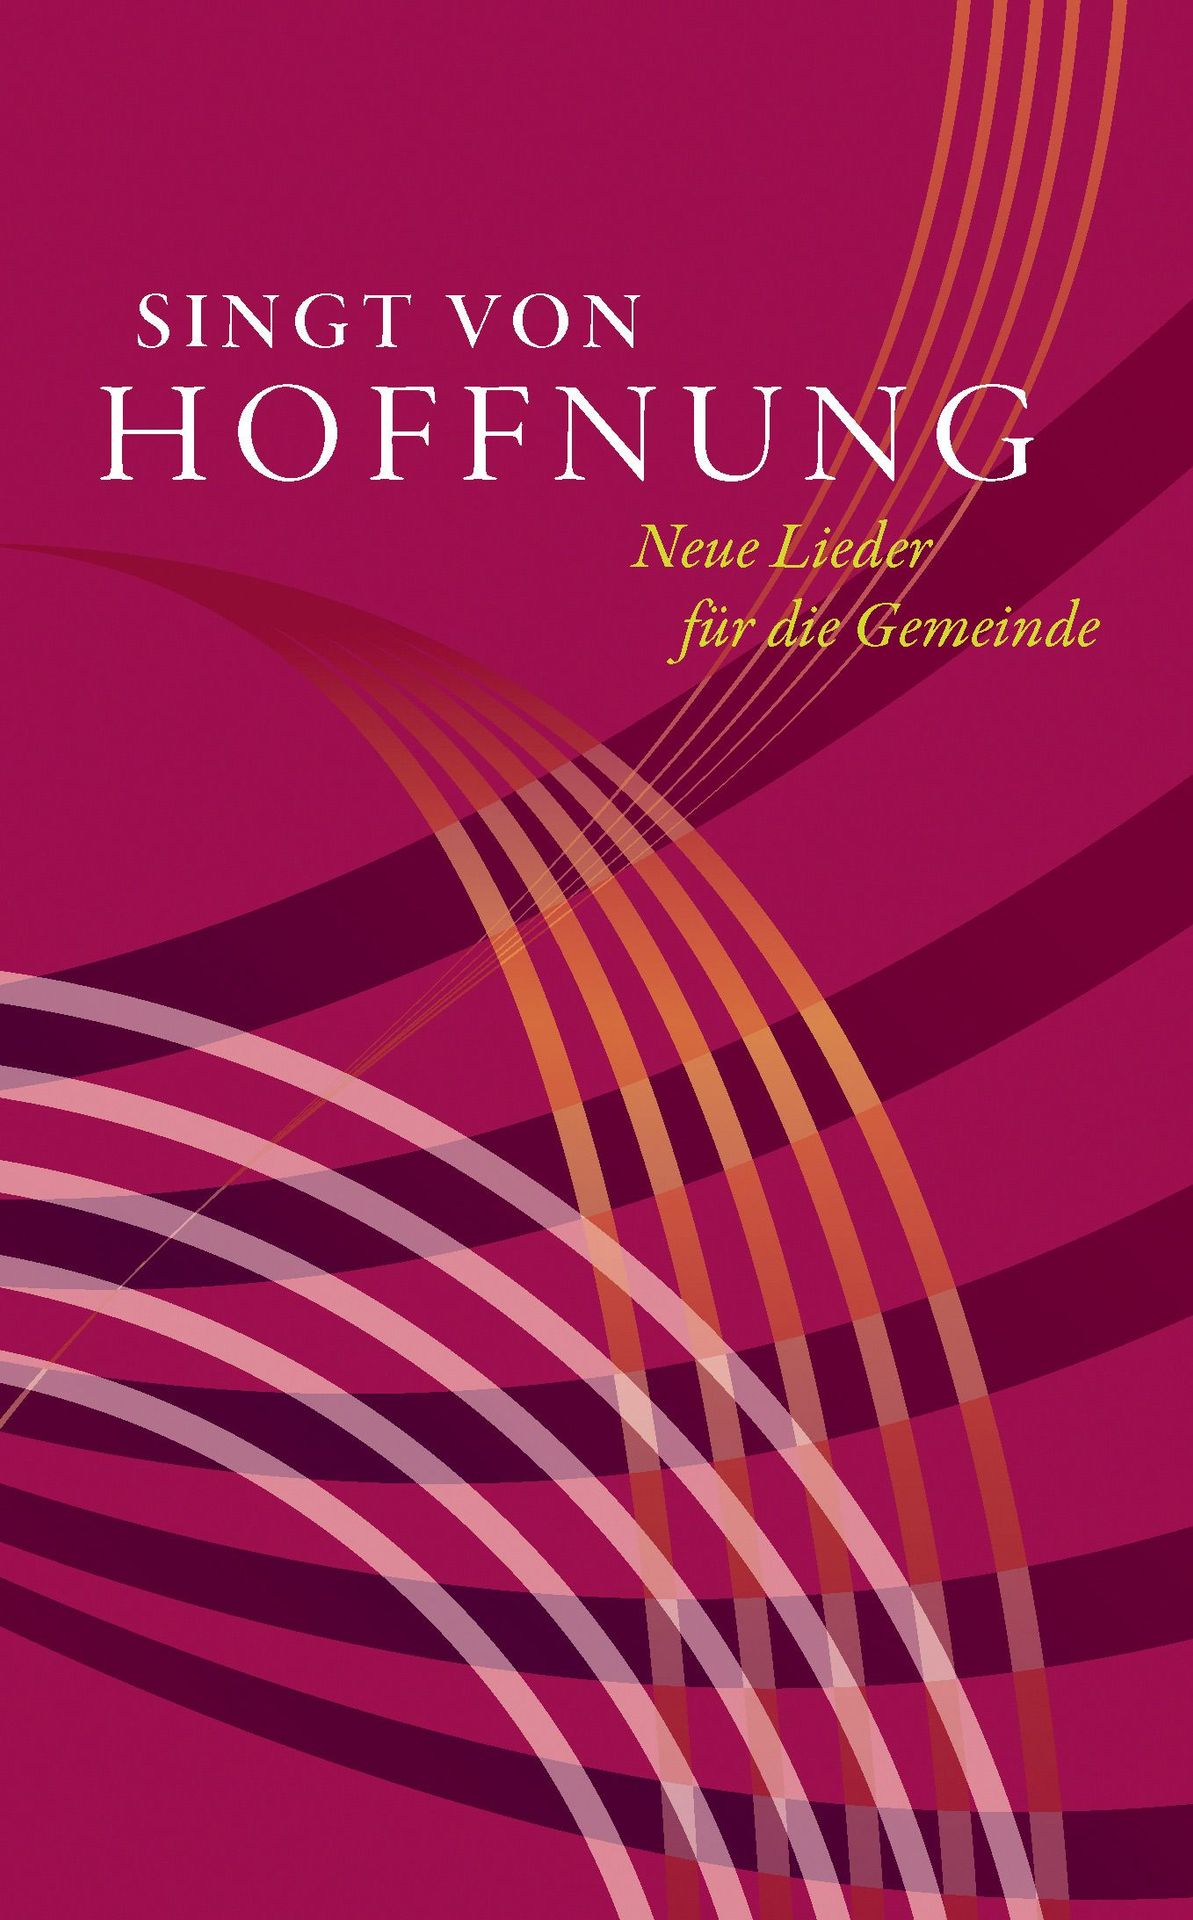 Noten Singt von Hoffnung Gesangbuch Evangelisches Verlagshaus Gesang PAPERBACK